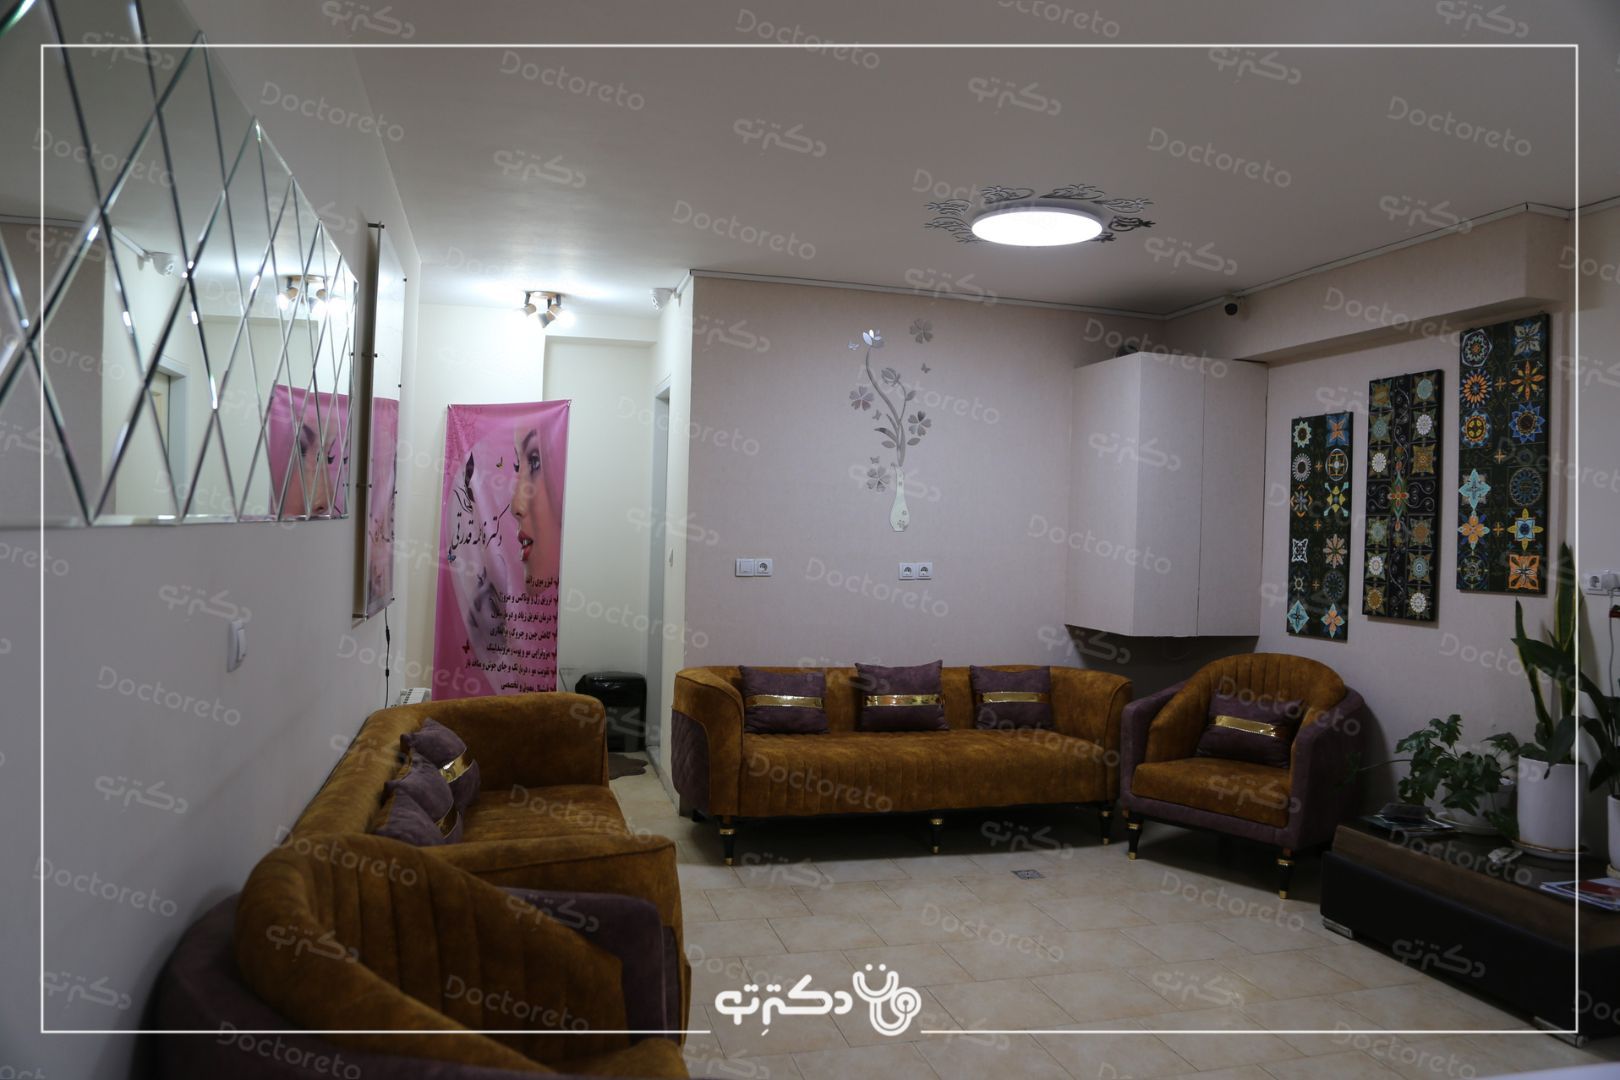 مزوتراپی ابرو با برند ام سی کازمتیک یا فیوژن(1جلسه) دکتر فاطمه قدرتی در شیراز 7